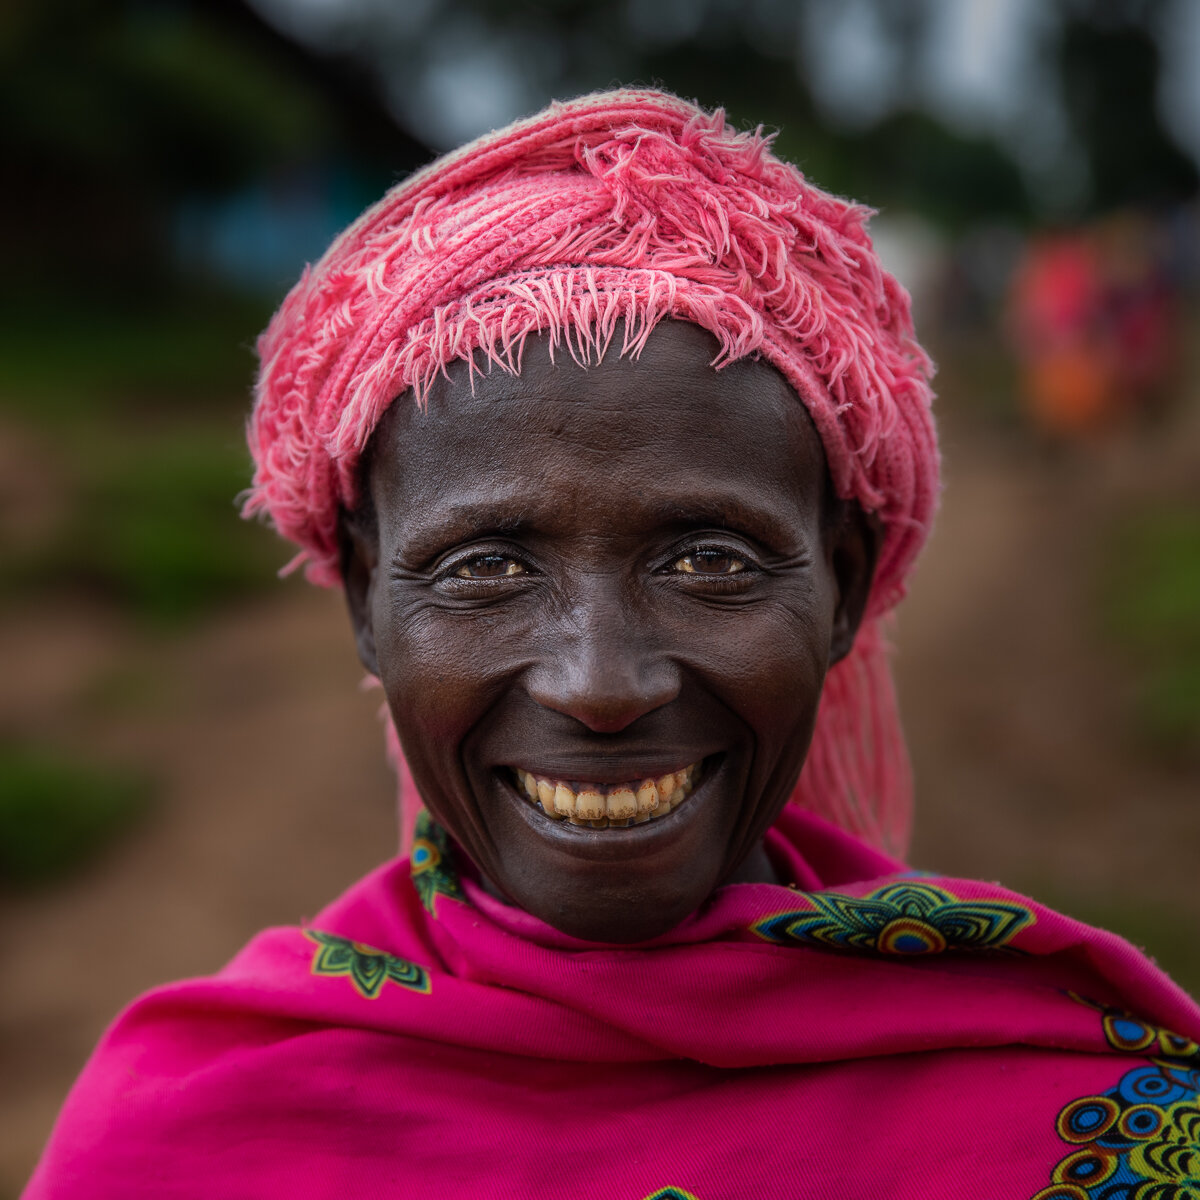  Dizi tribe Maji ethiopia Omo Valley photo tours 